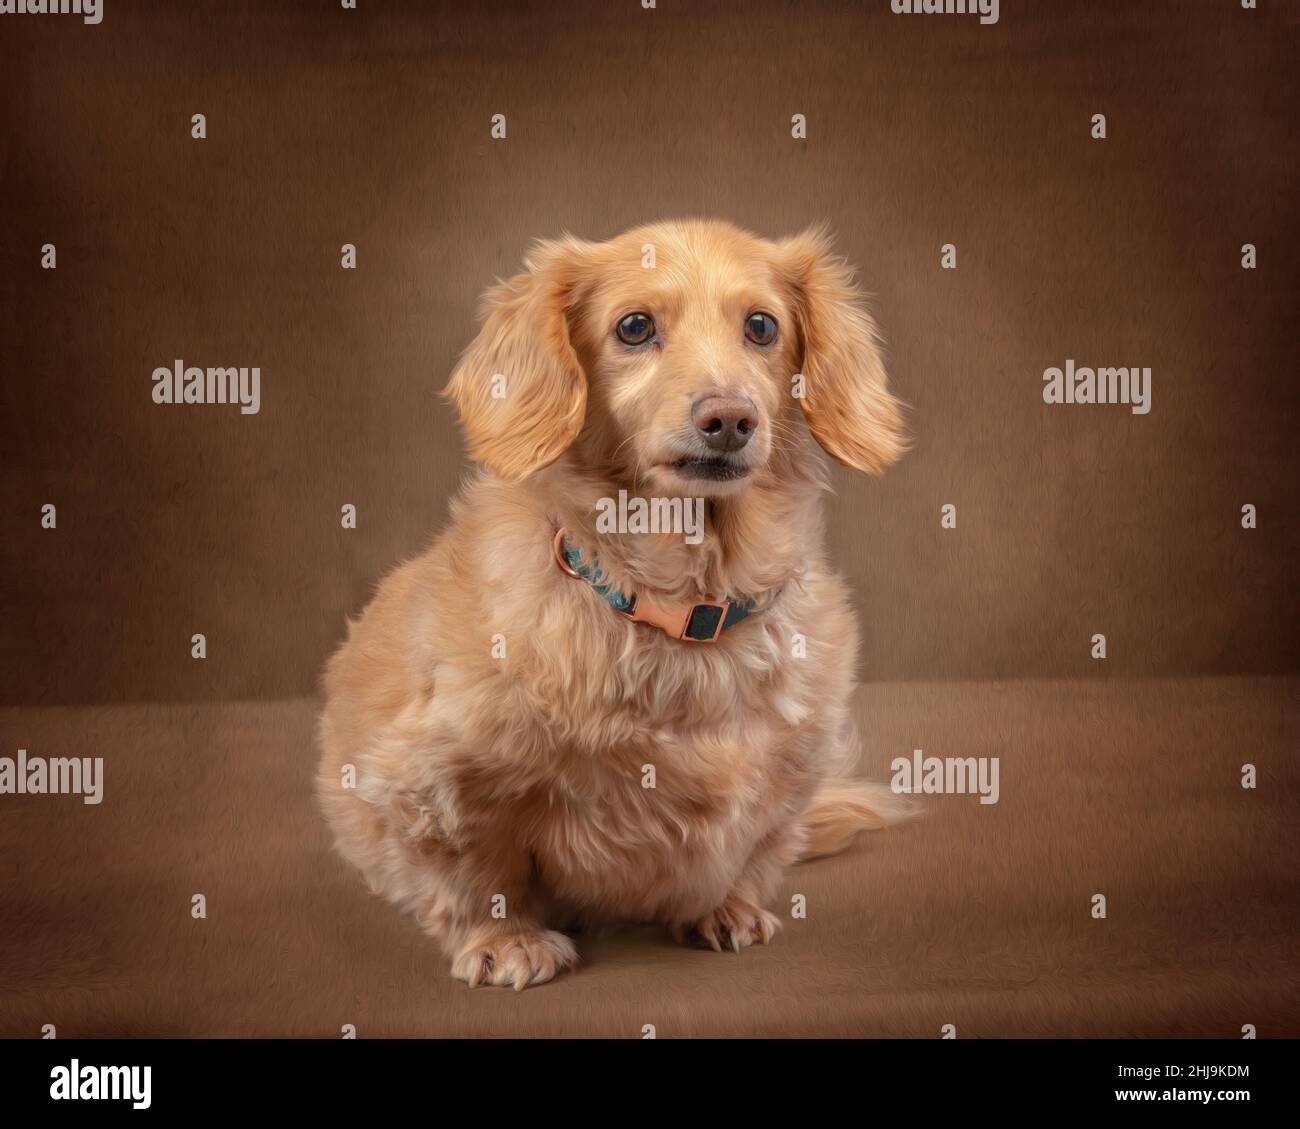 Scatto orizzontale di un dachshund panna inglese a capelli lunghi posto su uno sfondo marrone scuro guardando la fotocamera. Foto Stock